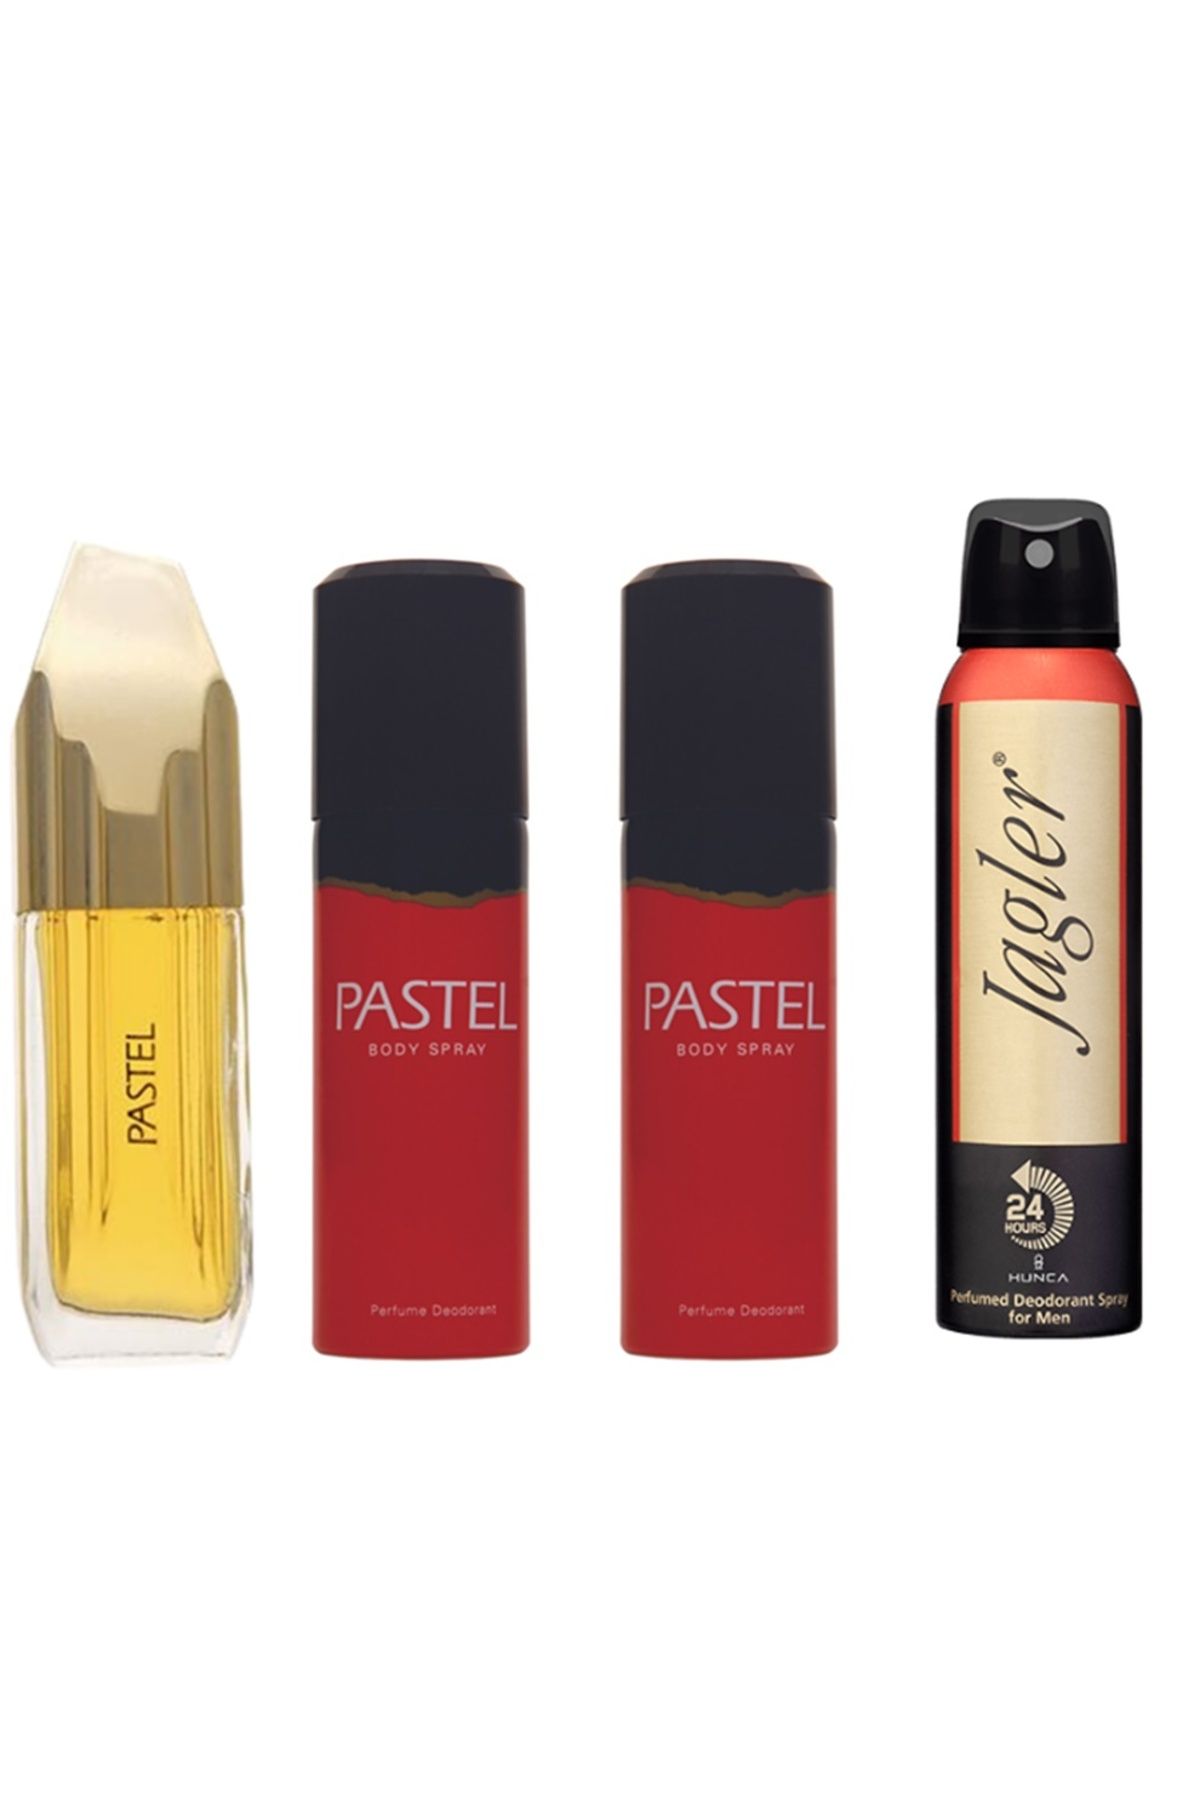 Pastel Kadın Women Parfüm EDT 50 ml + 2 Adet 125 ml Deodorant + Jagler Erkek Deoddorant 150 ml